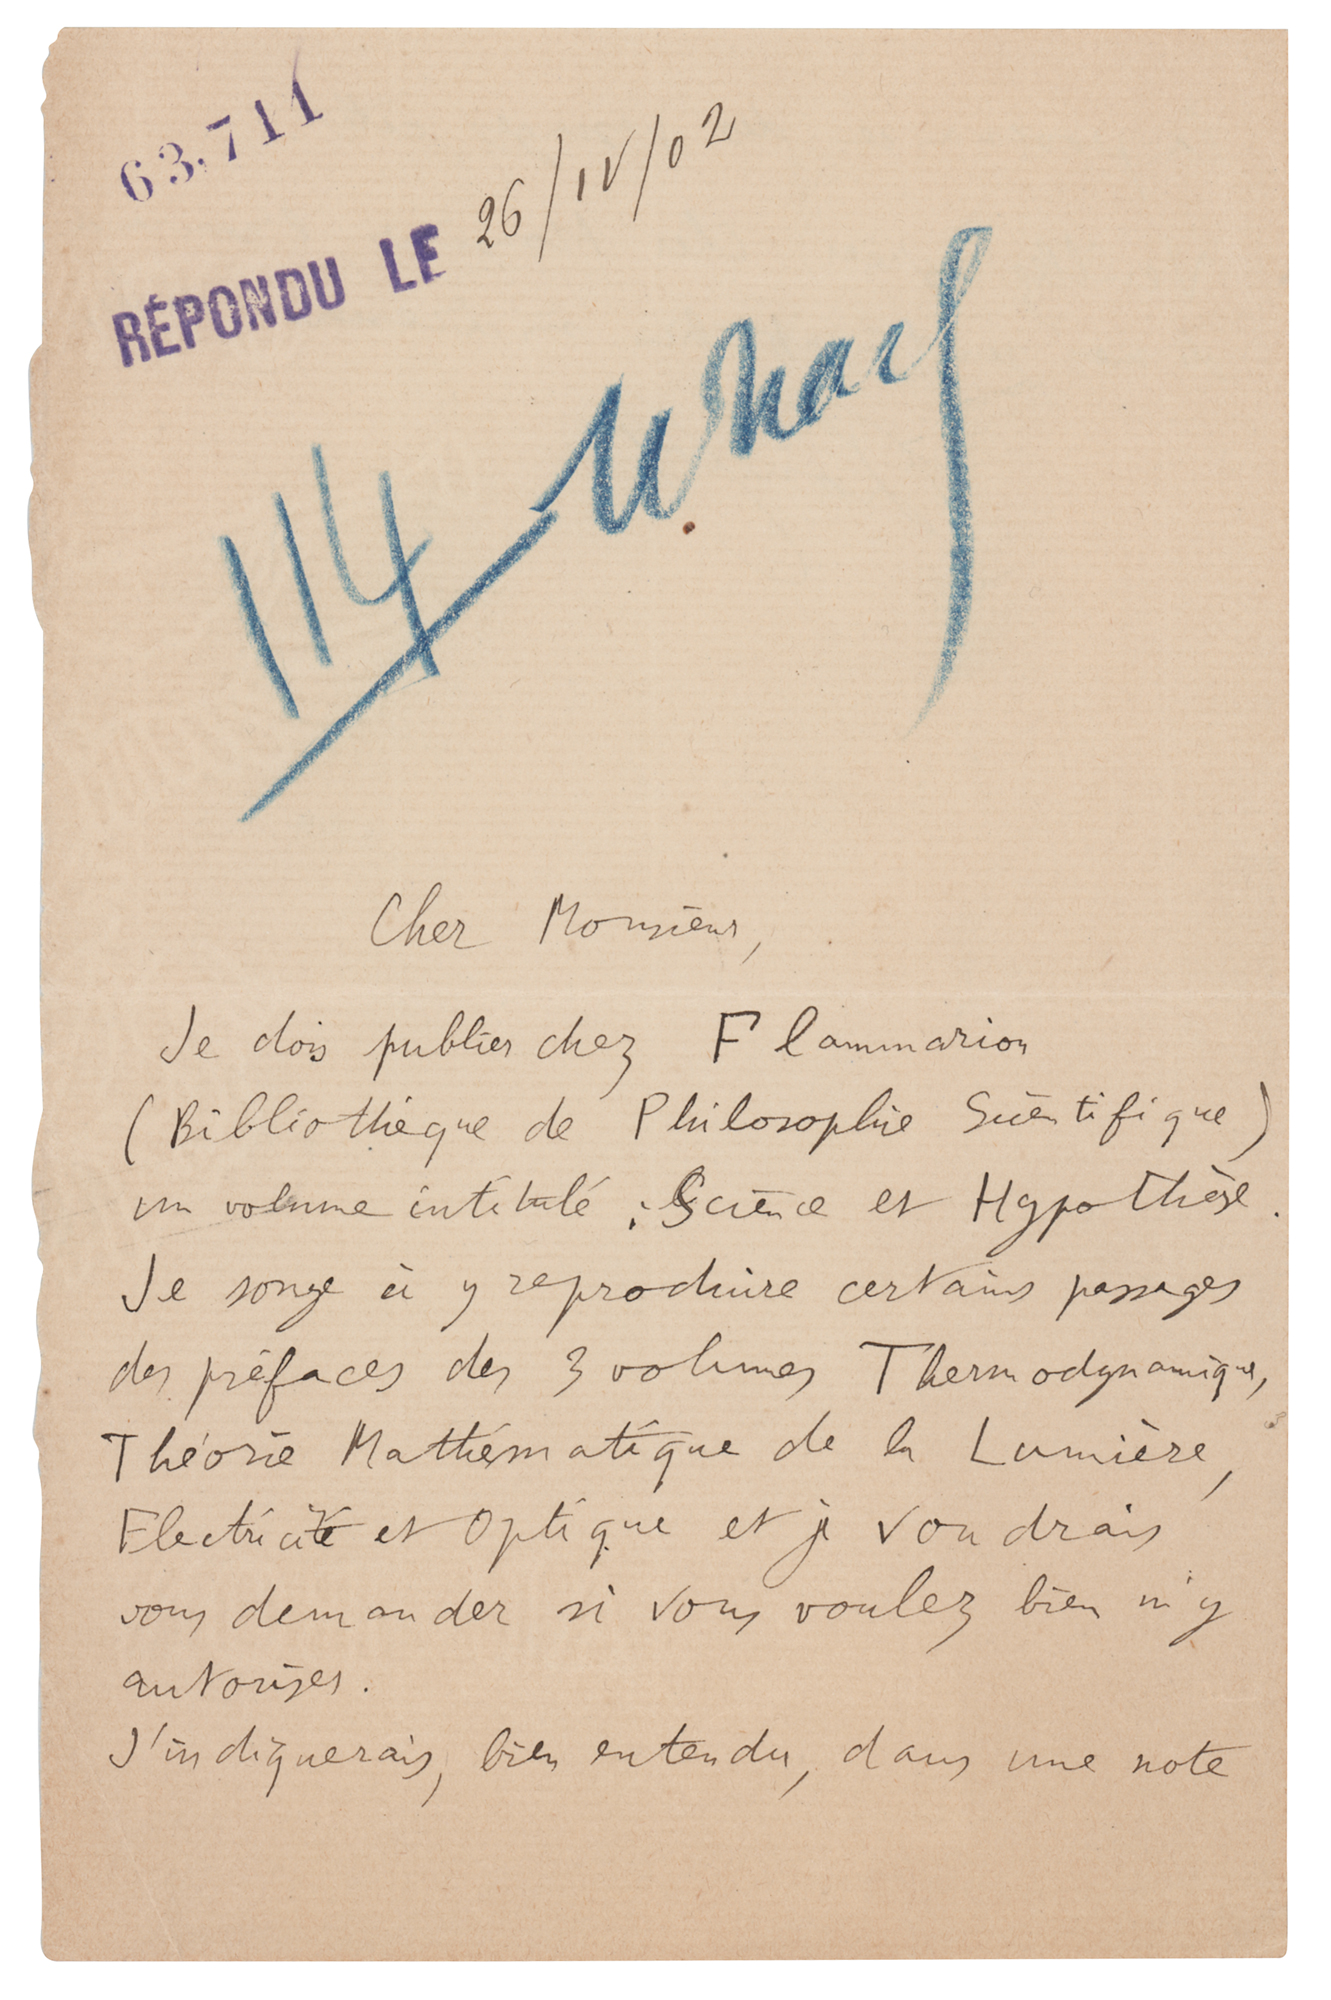 Lot #200 Henri Poincare Autograph Letter Signed